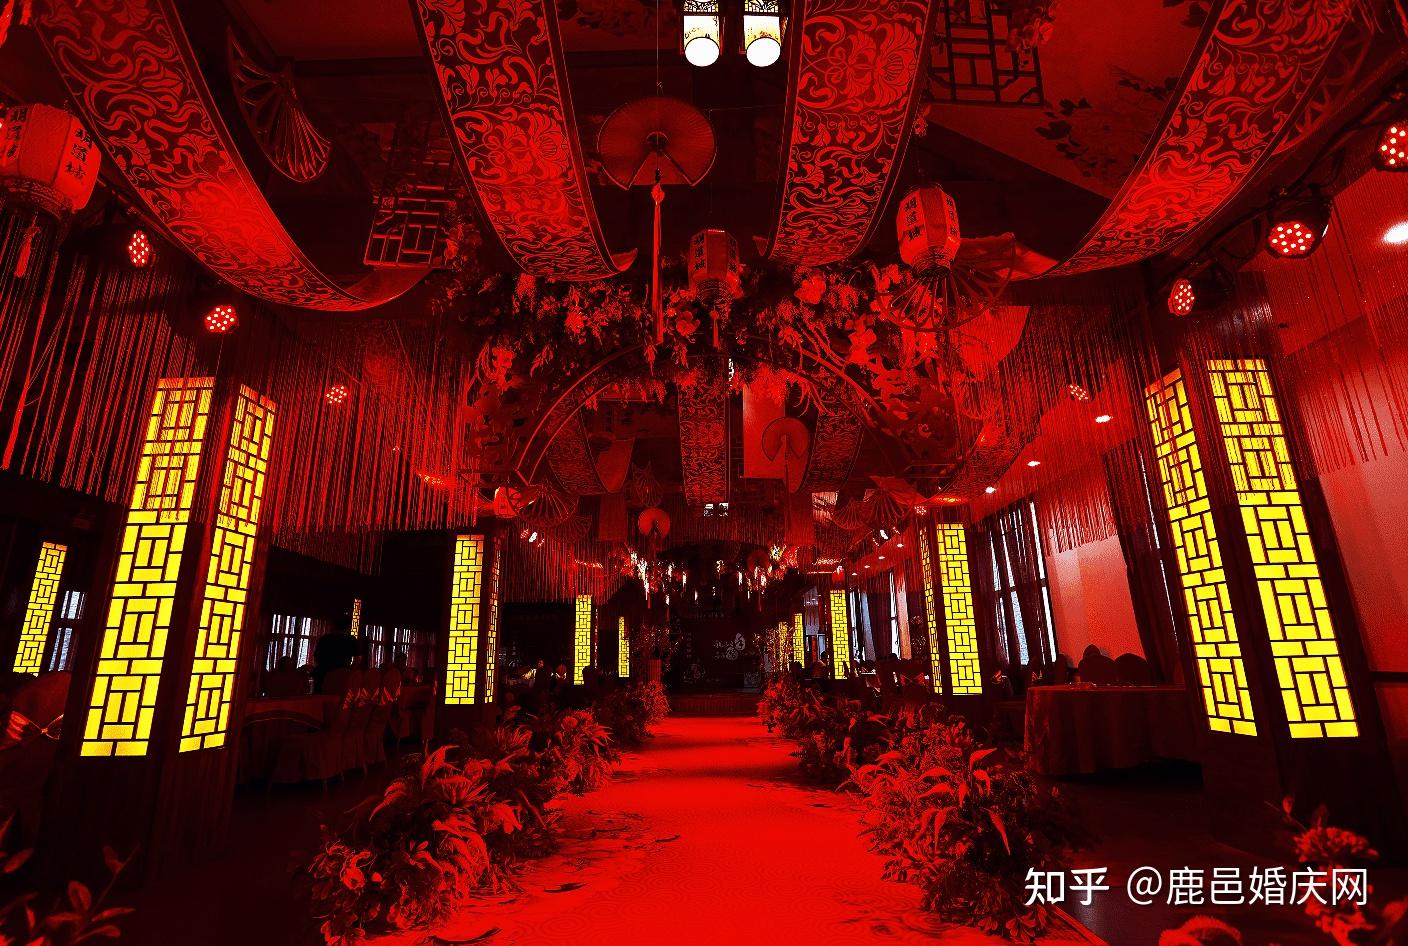 中式婚礼火起来 十月期间举办了 十 场中式婚礼。_集体婚礼-中国集体婚礼网北京总部官网